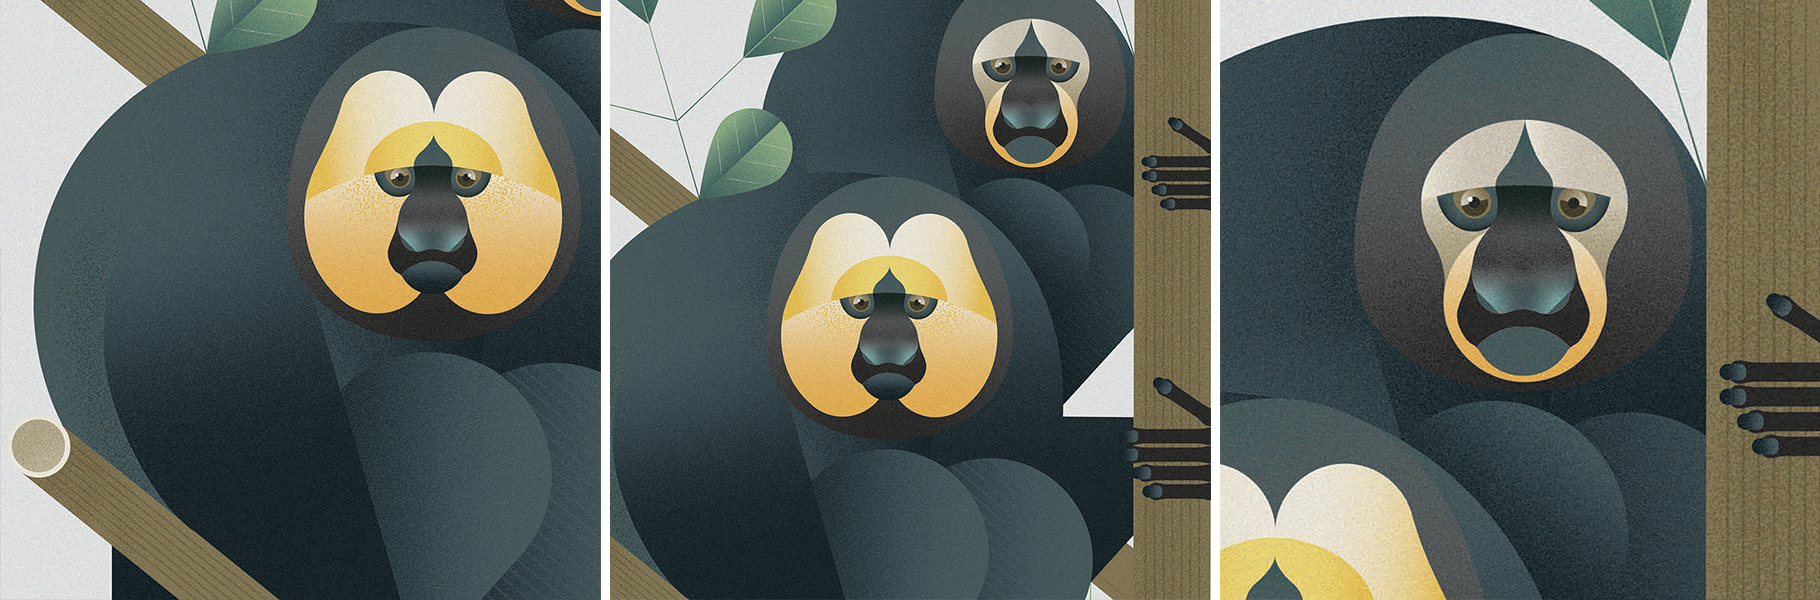 Illustrazione scimmia saki parco natura viva